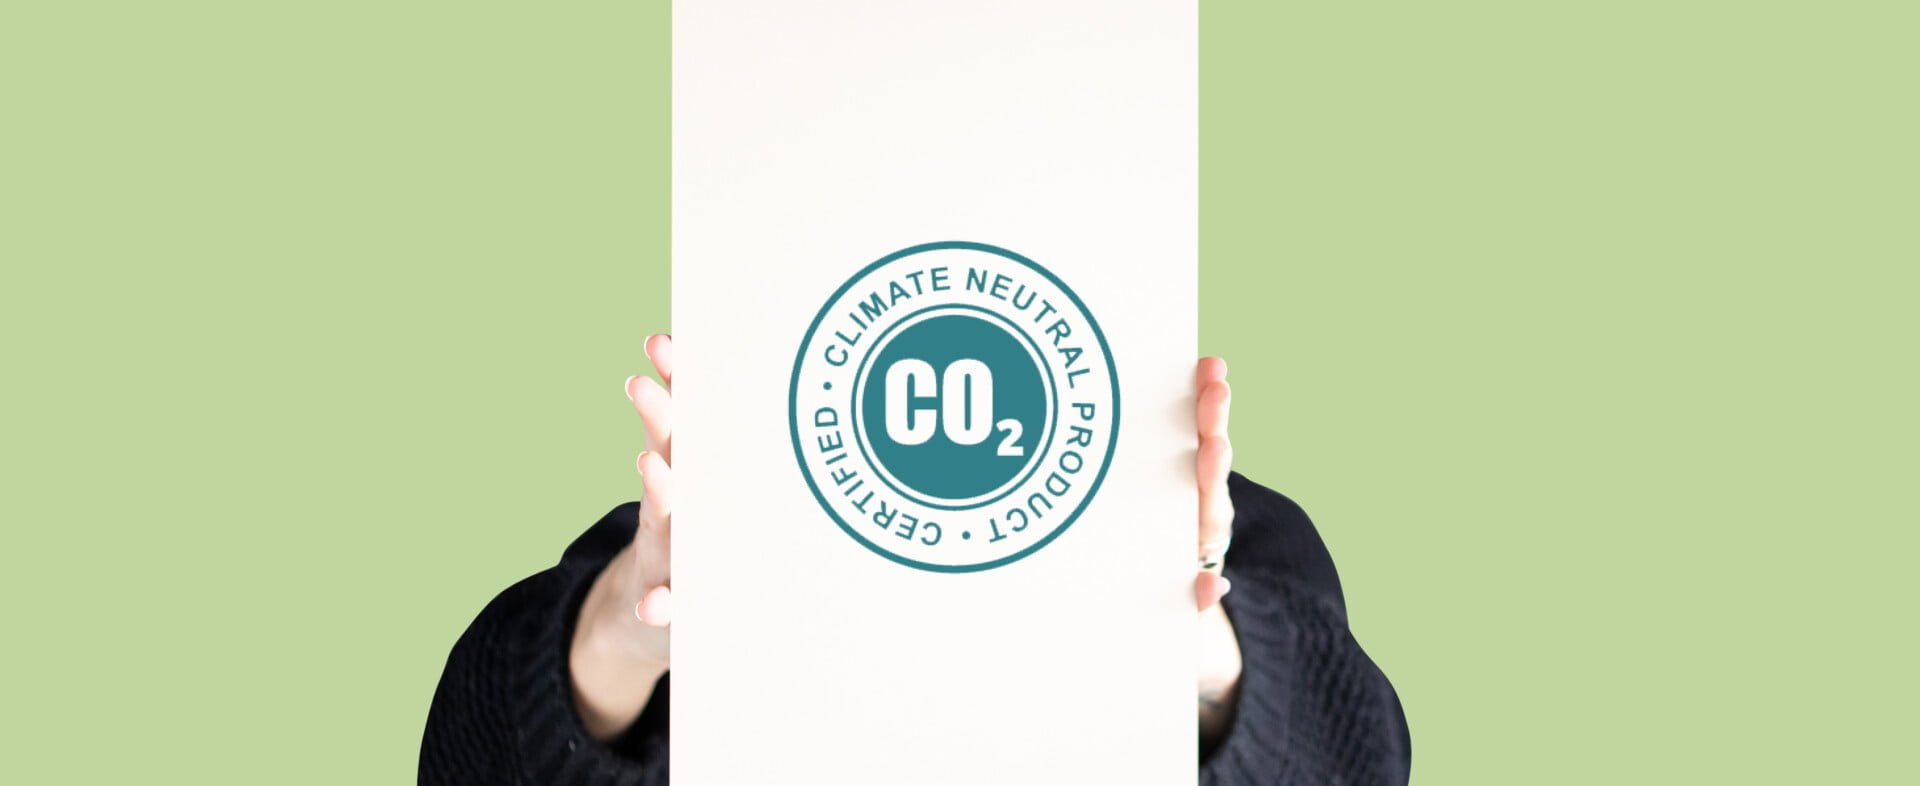 PAPERWISE EST UN PAPIER NEUTRE EN CO2 : QU’EN DITES-VOUS ?